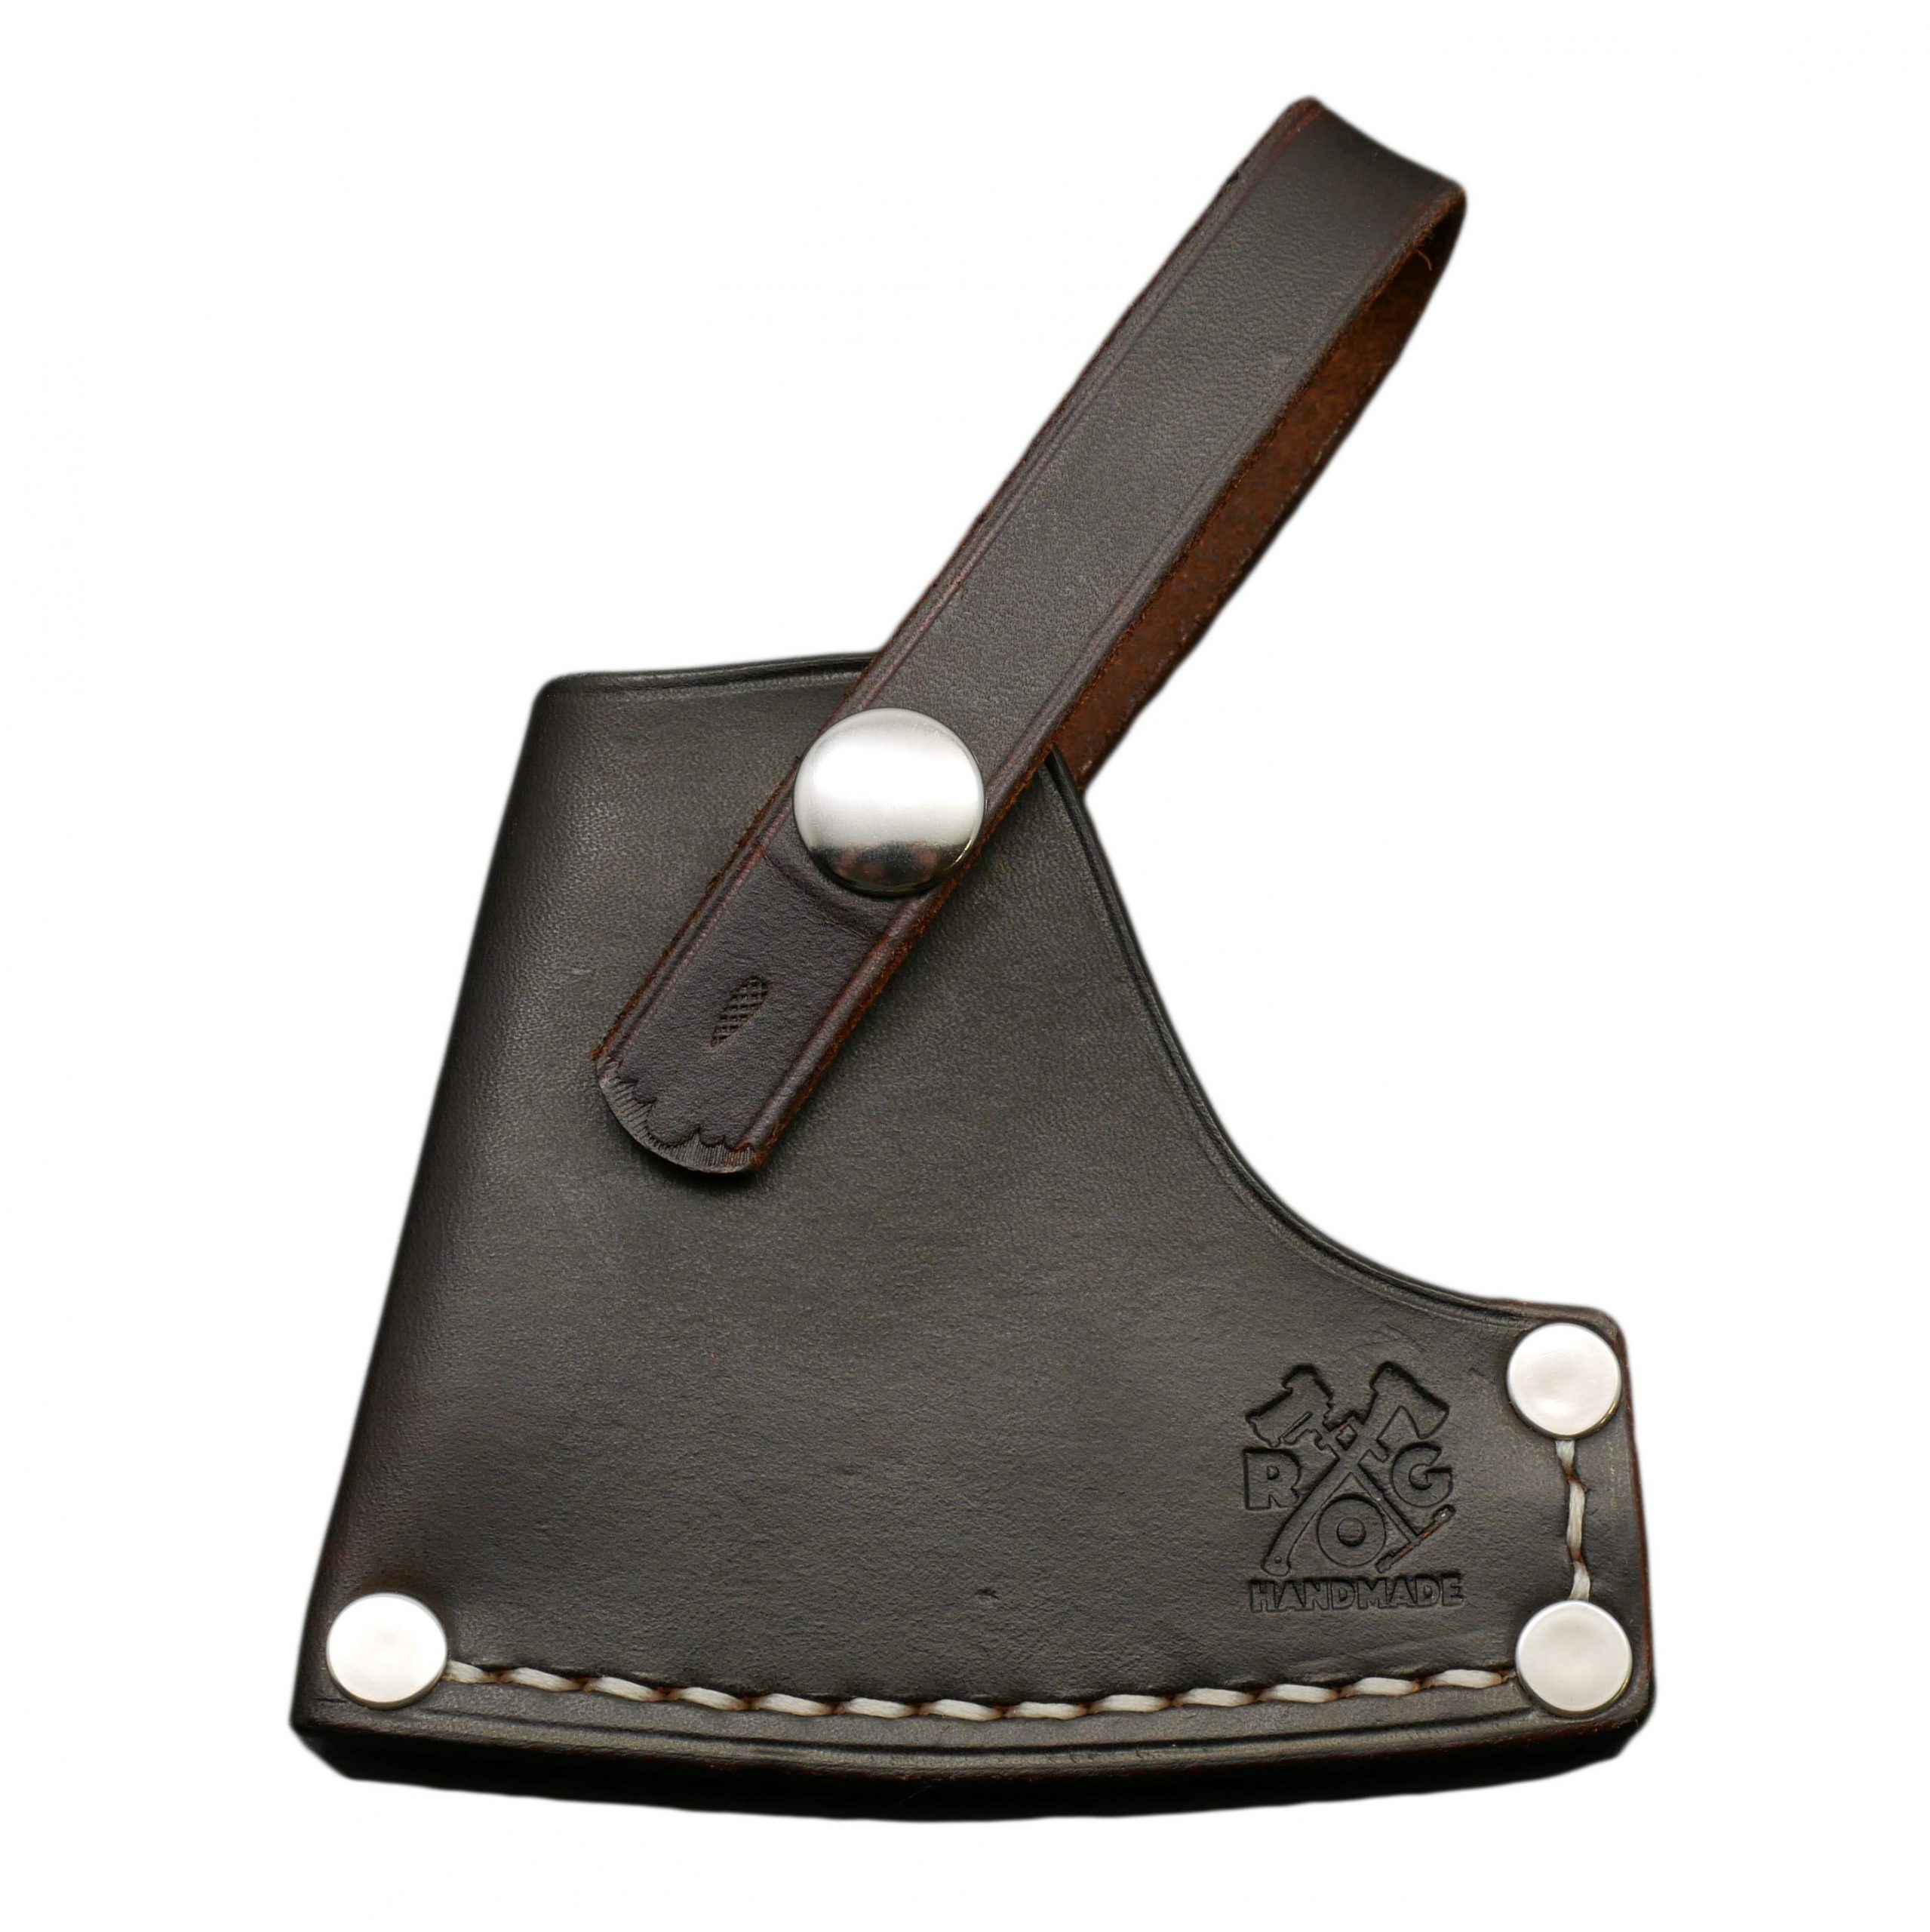 Gransfors Bruks Large Carving Axe #475 Custom Leather Sheath / Cover